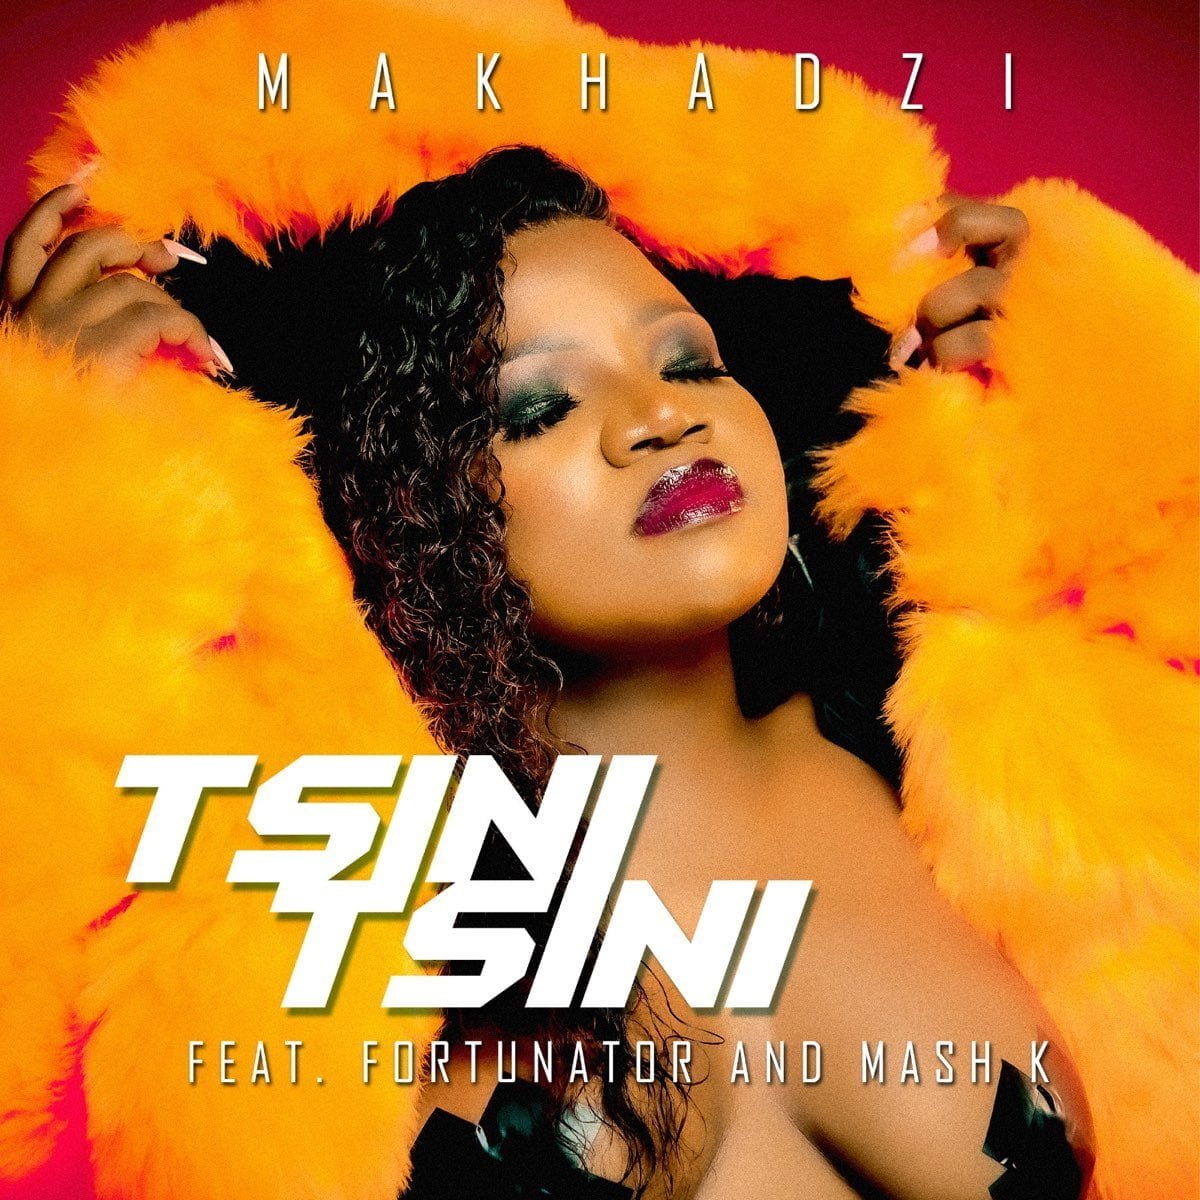 Makhadzi - Tsini Tsini (feat. Fortunator & Mash K) mp3 download free lyrics